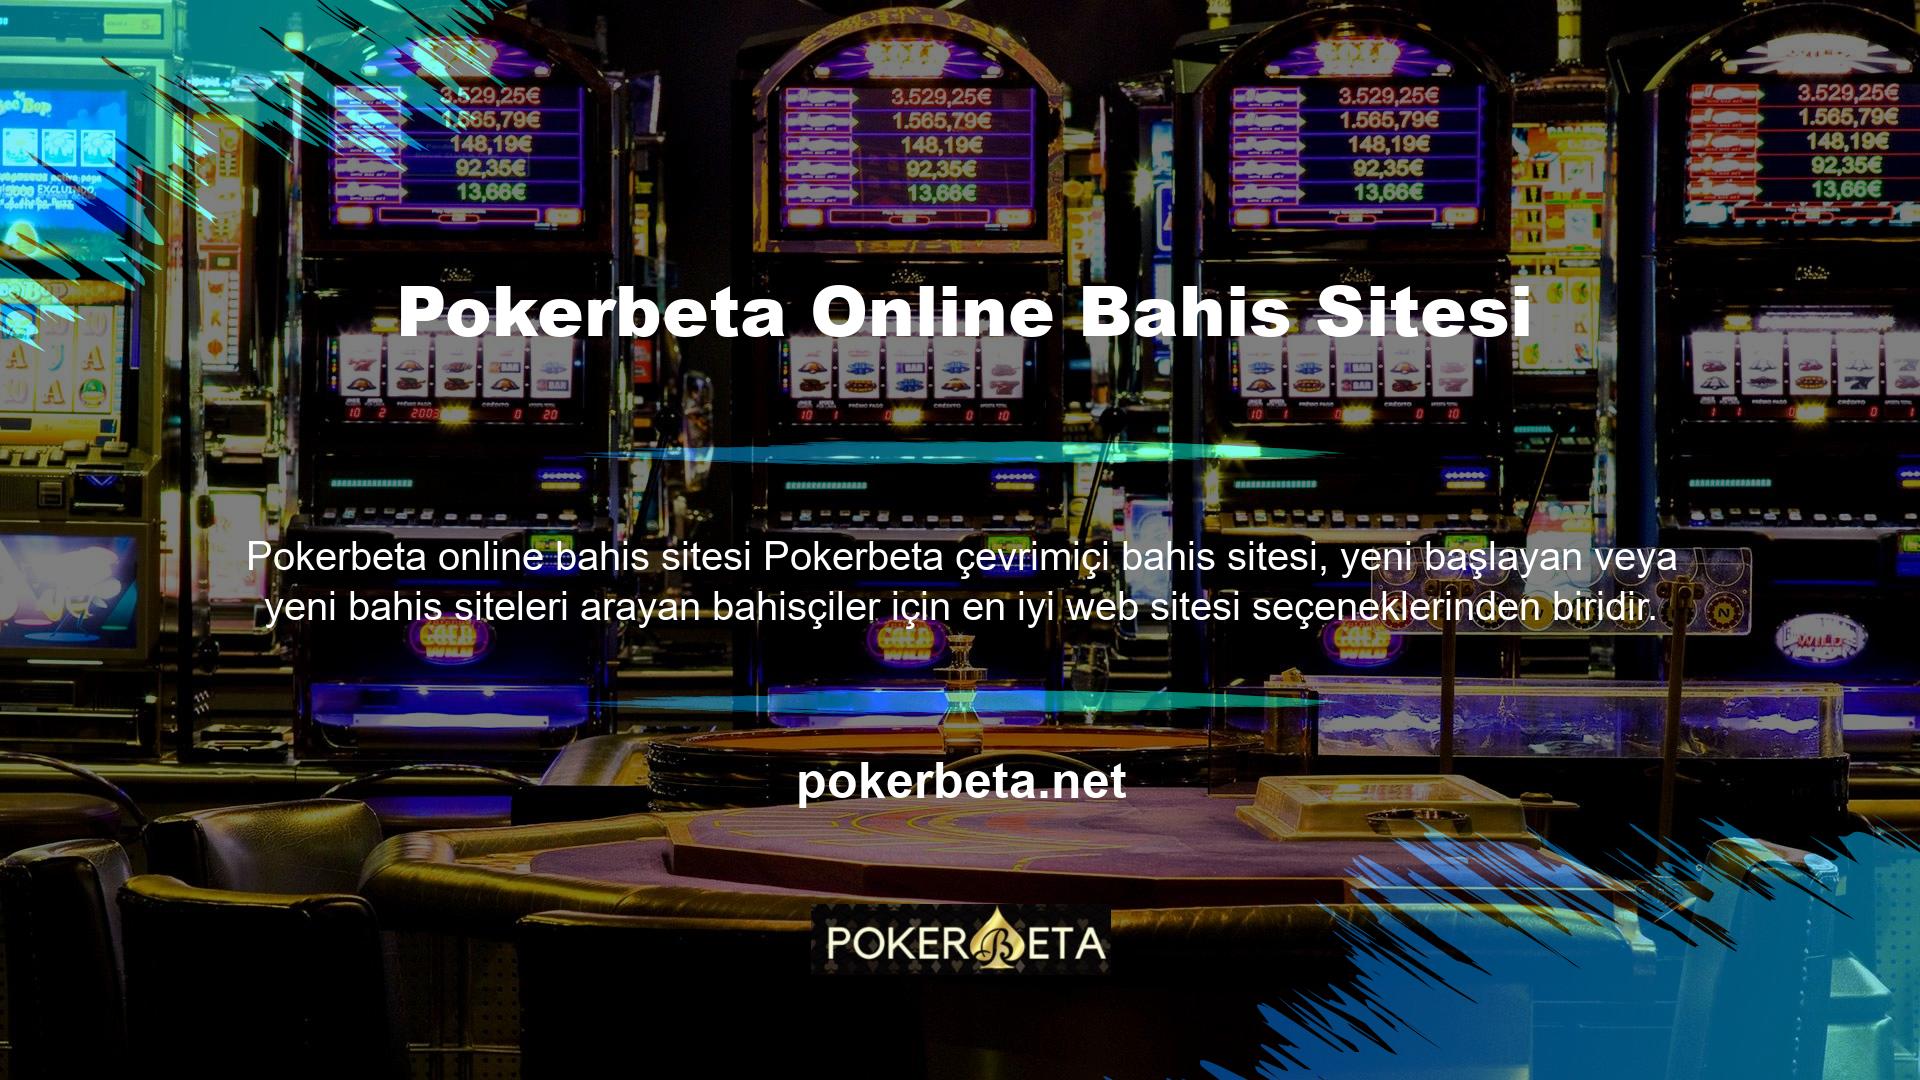 Pokerbeta web sitesi, bahis piyasasında deneyimli kullanıcılara ve oyunculara kaliteli ve güvenilir hizmet sunmaktadır